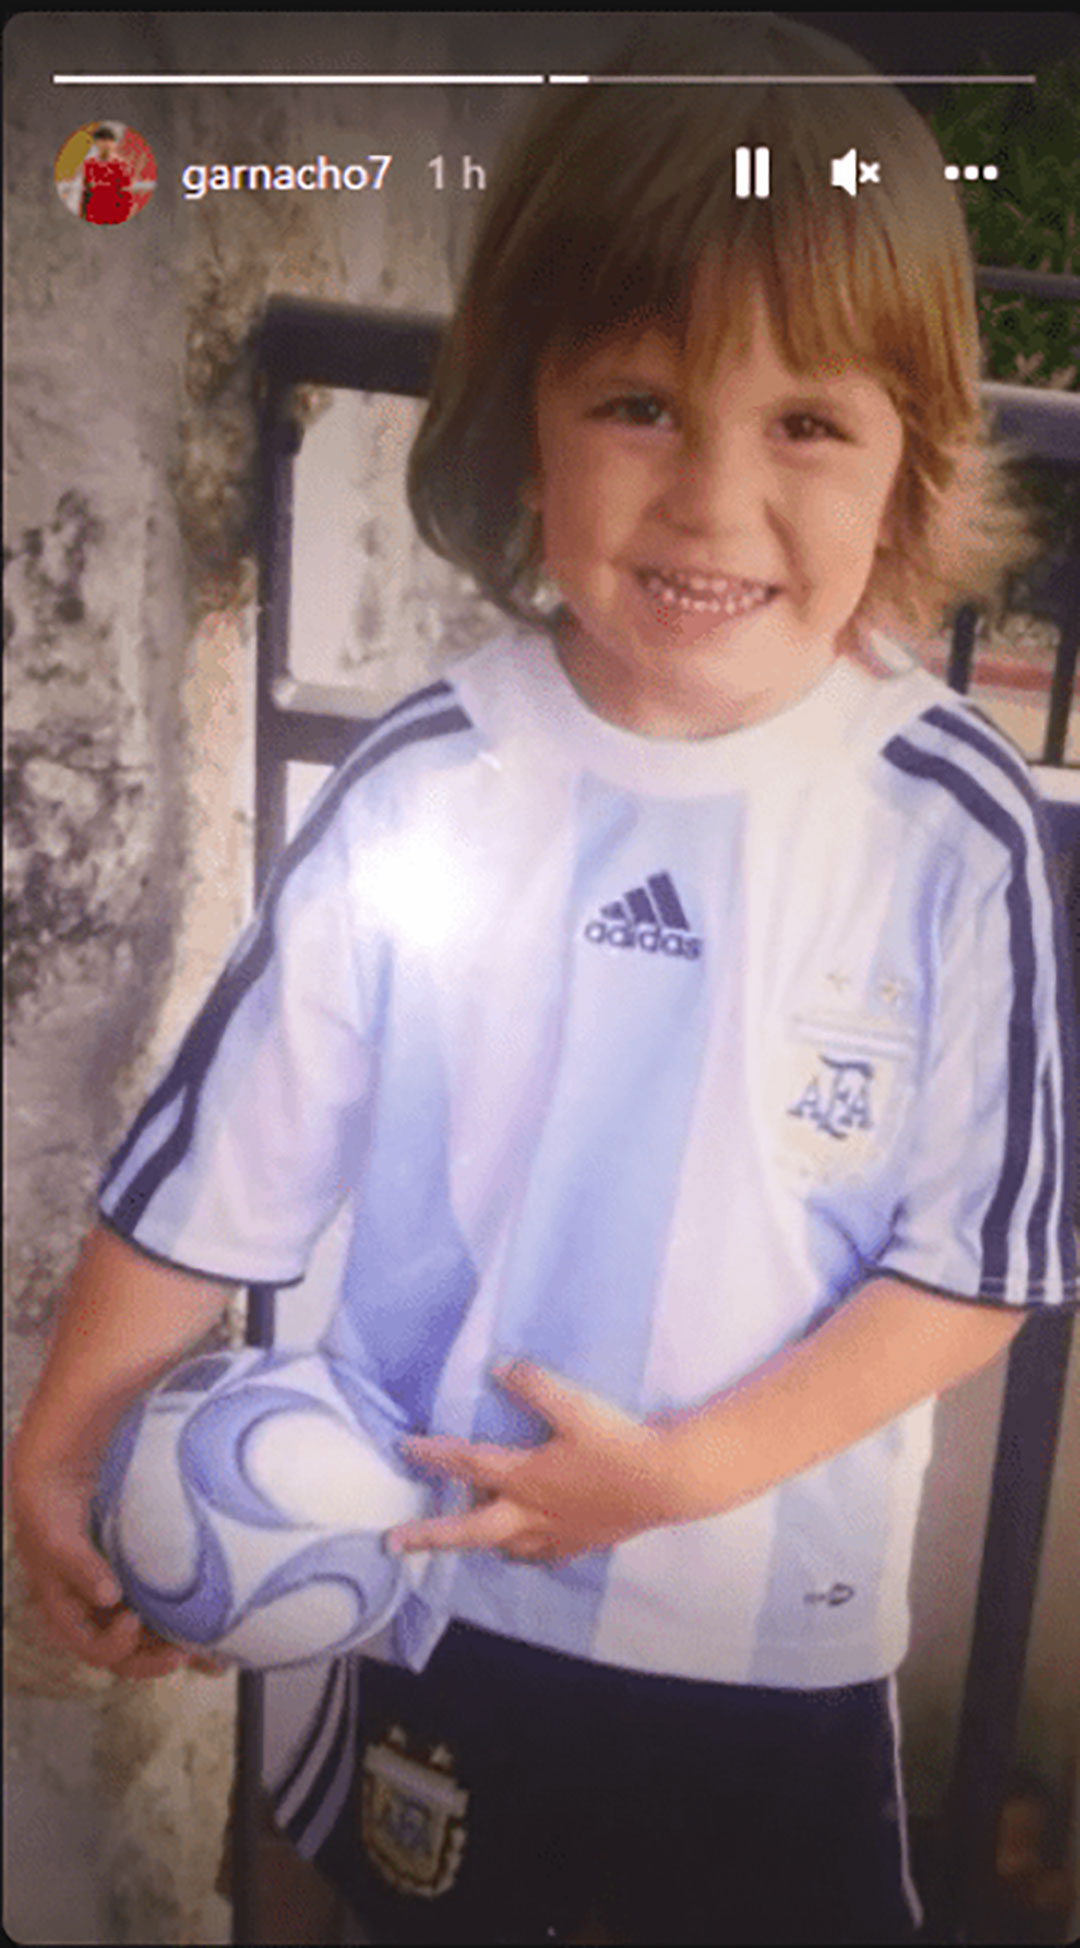 "Garna" de chico con la indumentaria de la selección argentina (@garnacho7)